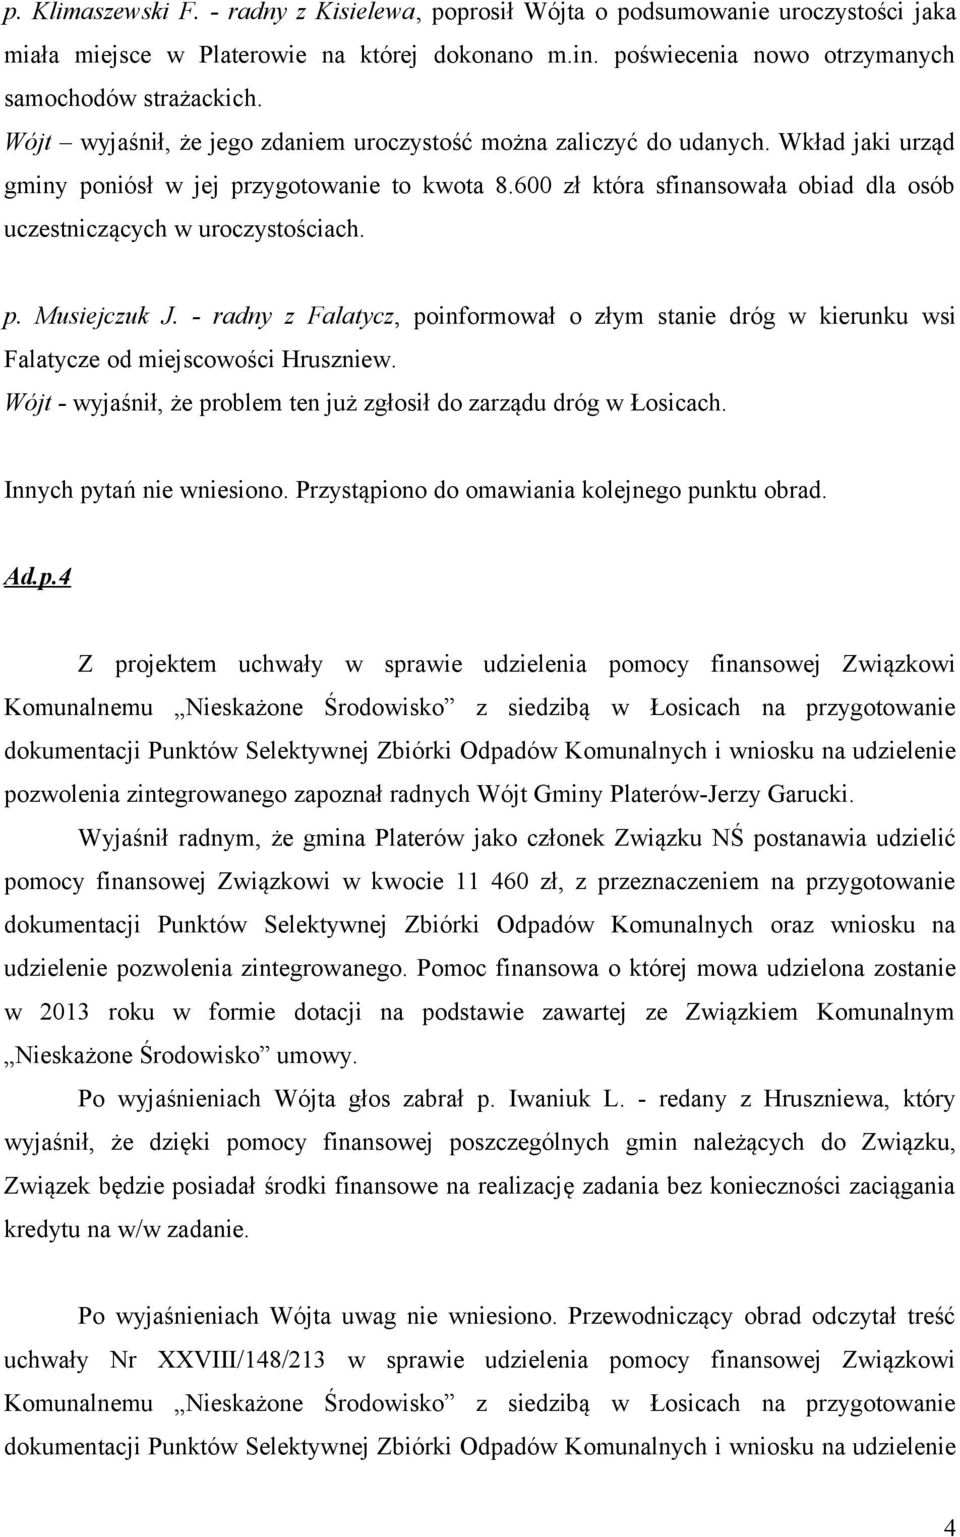 600 zł która sfinansowała obiad dla osób uczestniczących w uroczystościach. p. Musiejczuk J. - radny z Falatycz, poinformował o złym stanie dróg w kierunku wsi Falatycze od miejscowości Hruszniew.